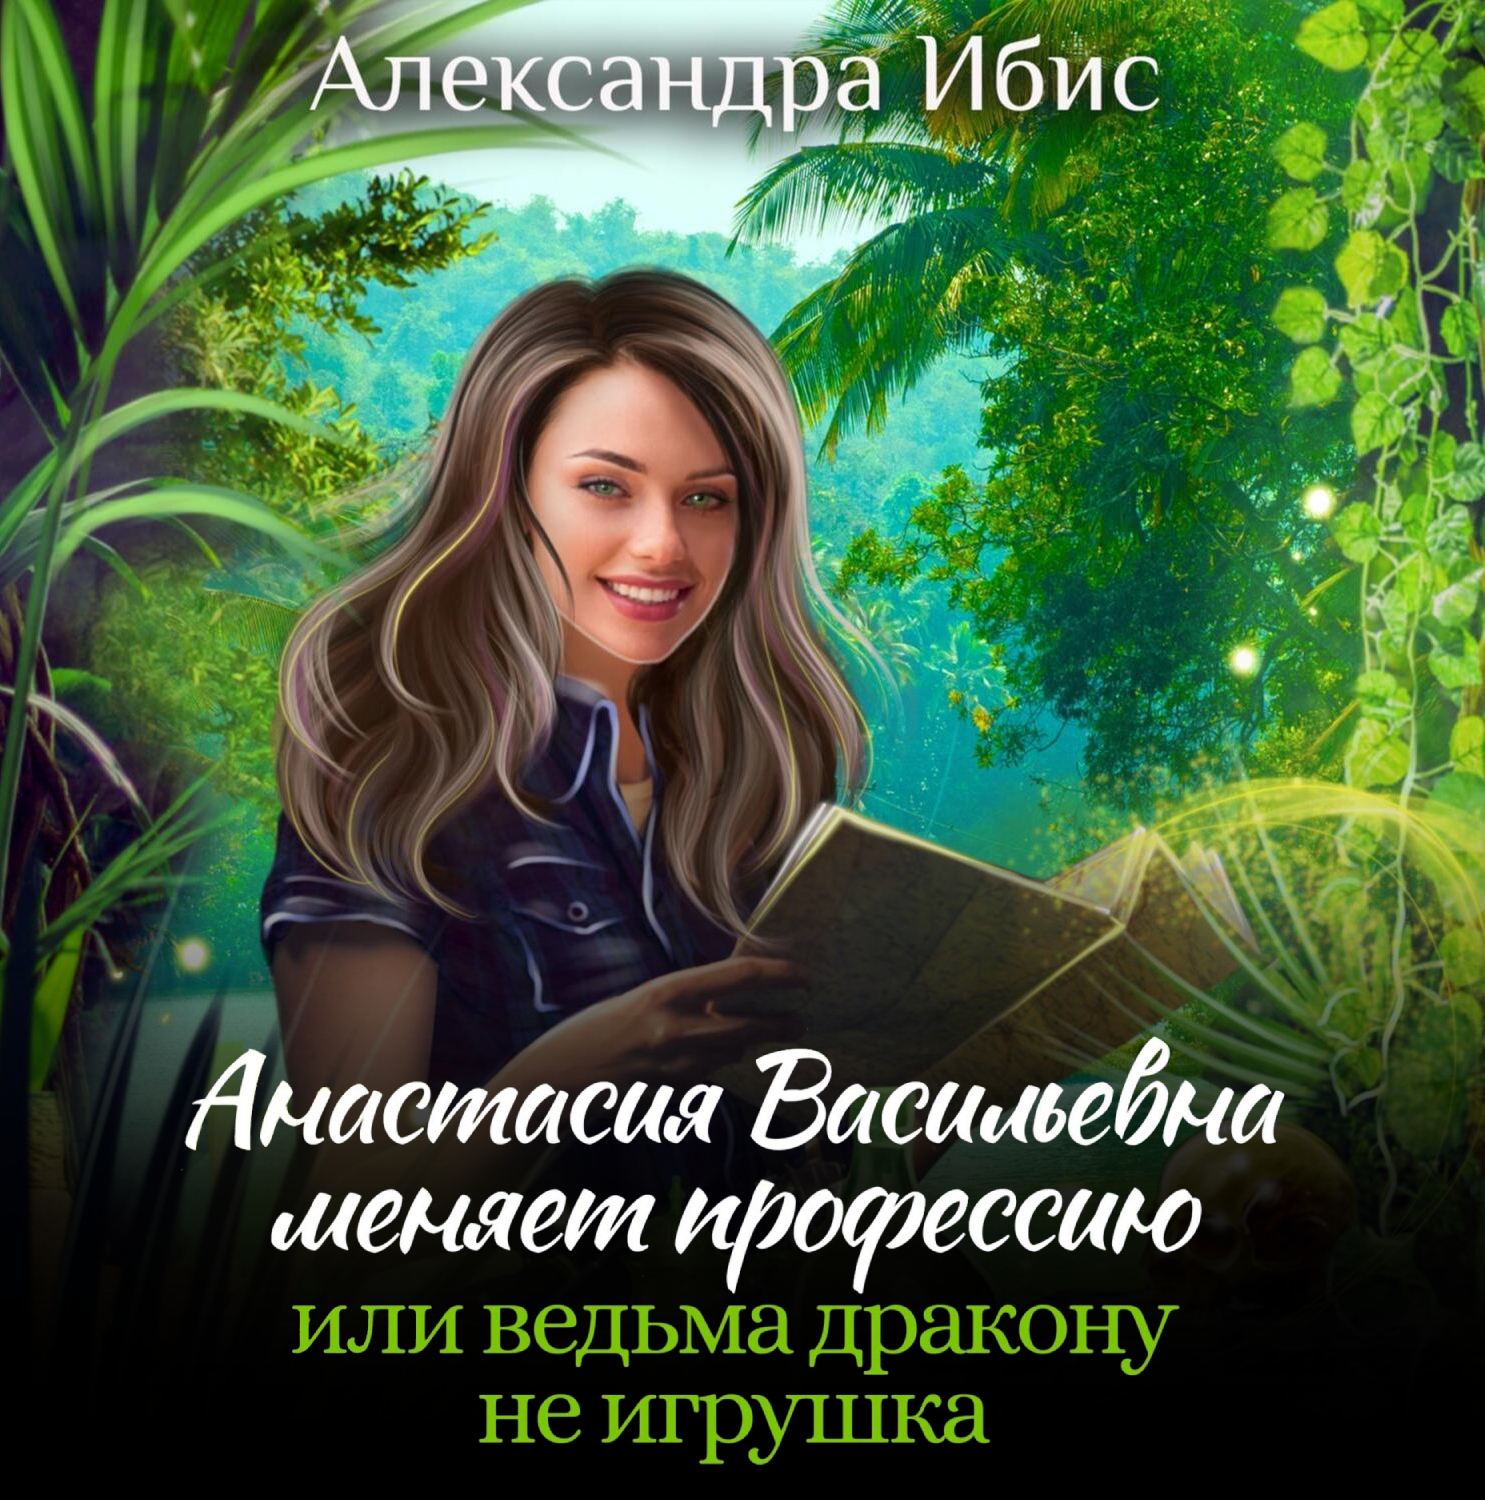 Ведьма и дракон книги. Ведьмочки травницы начинающие. Русские книги фэнтези авторы и названия. Аудиокнига или ведьма дракону не игрушка.